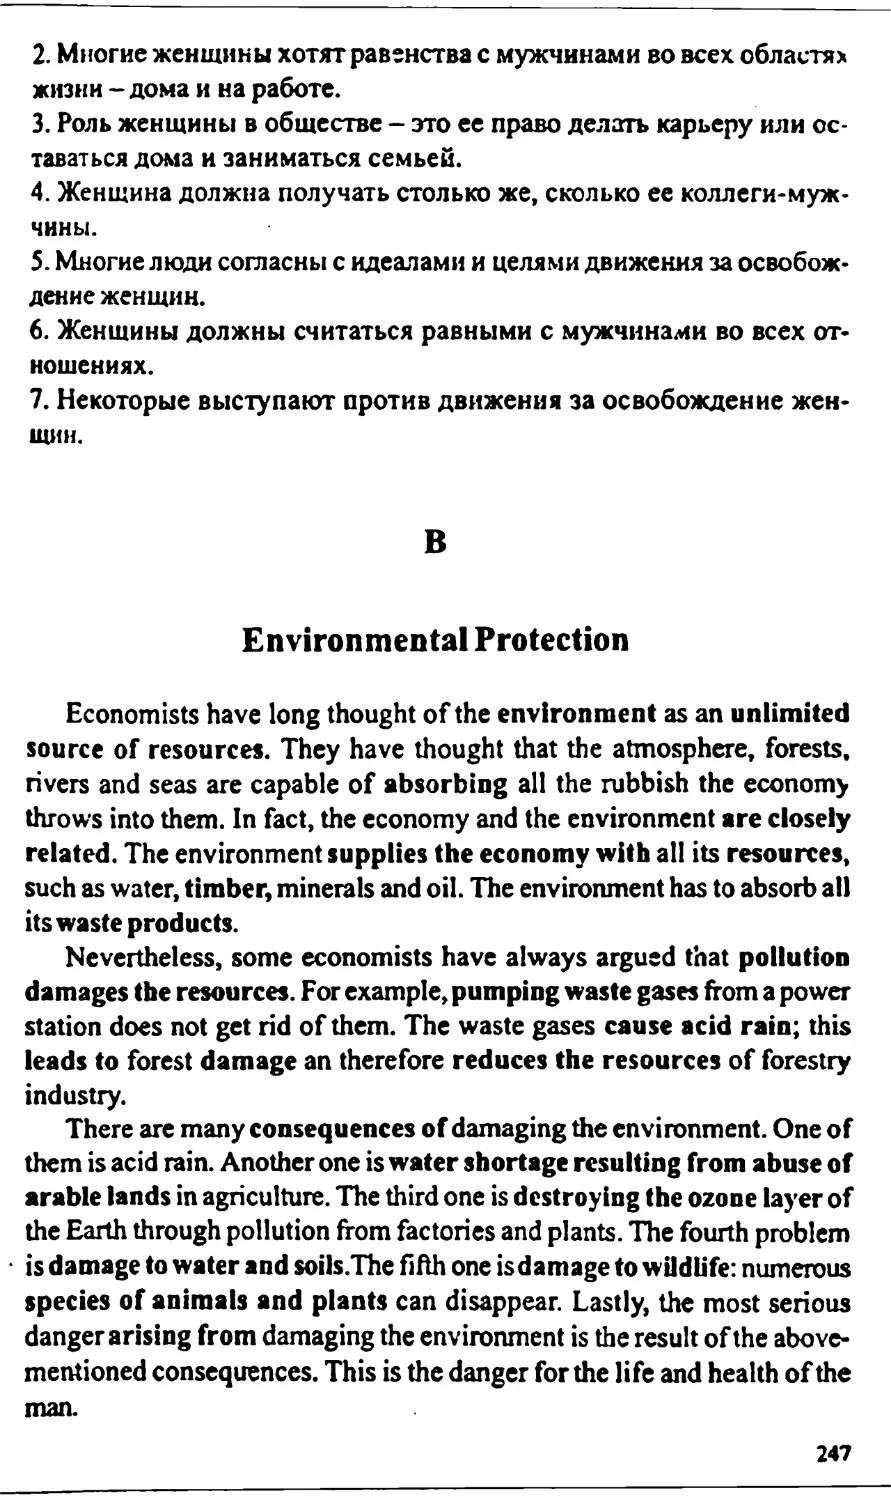 B. Environmental Protection